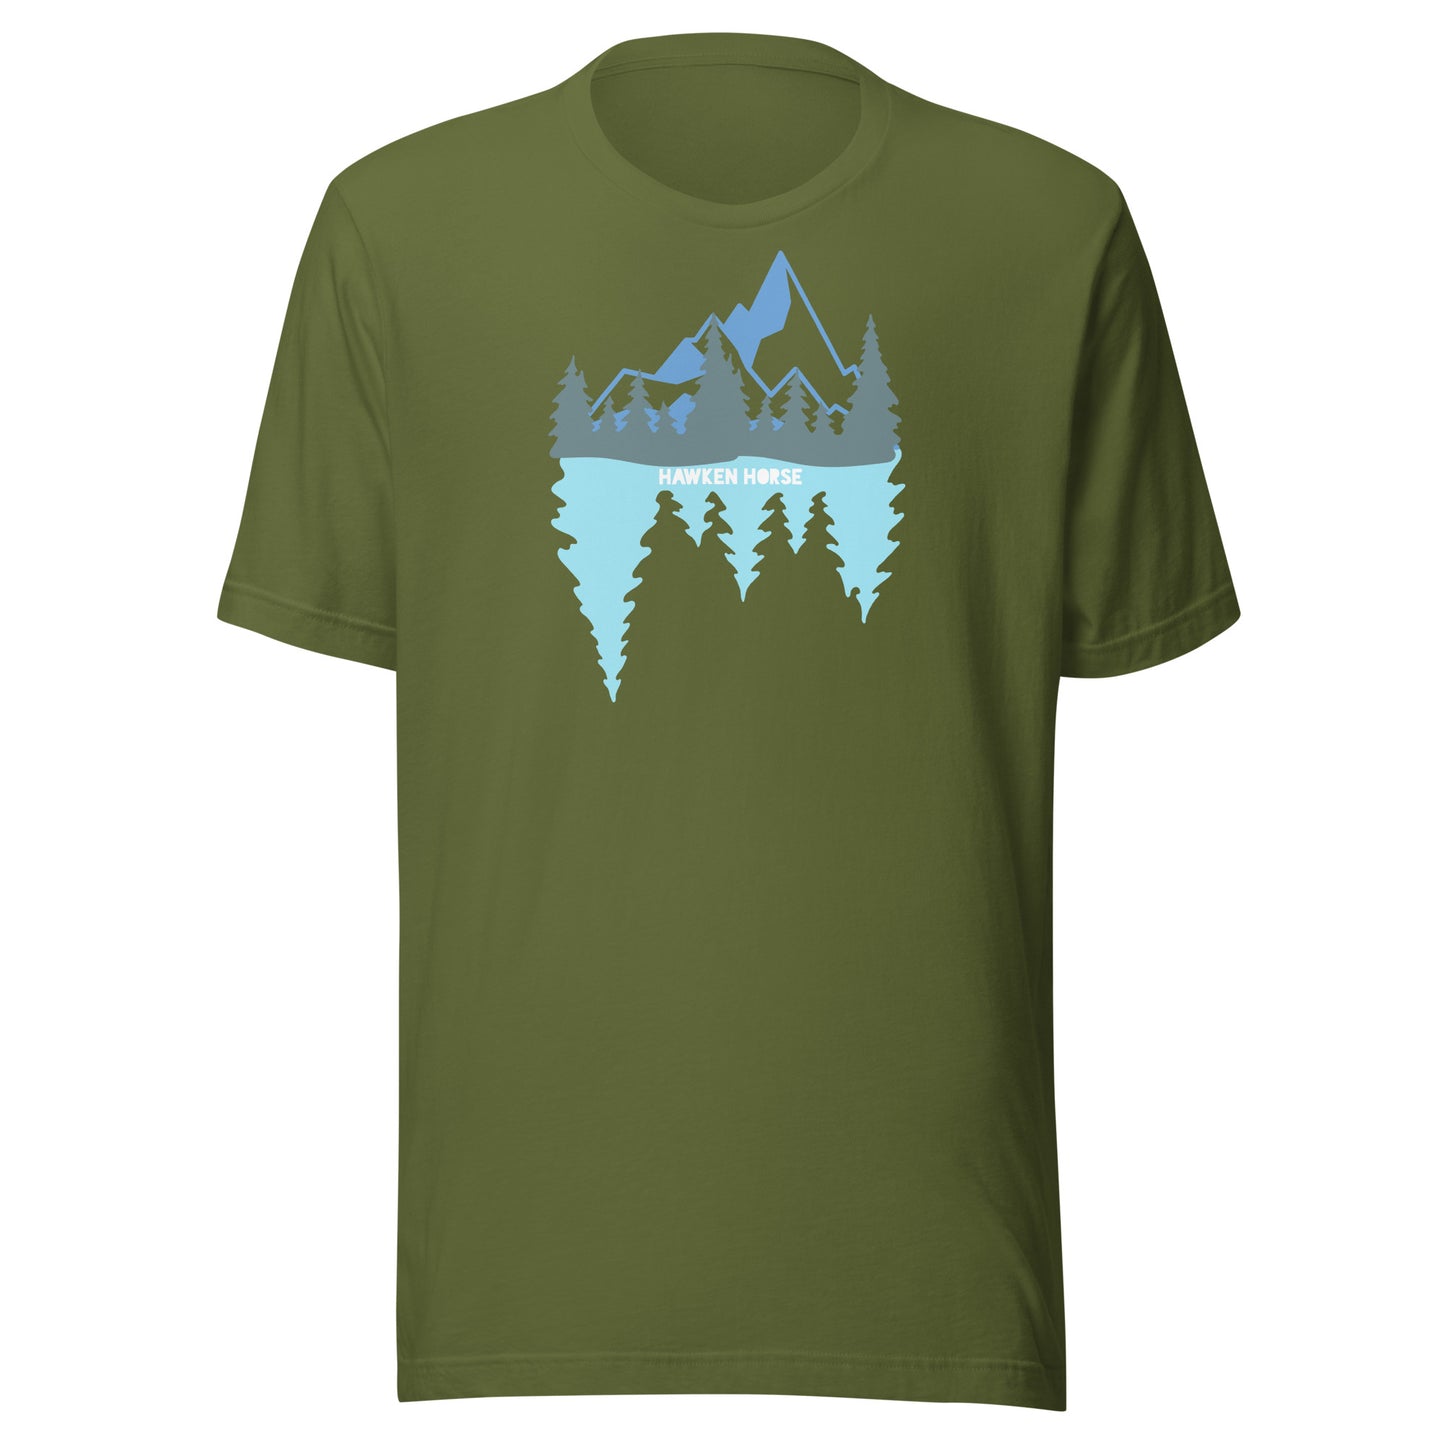 Mirror Lake t-shirt